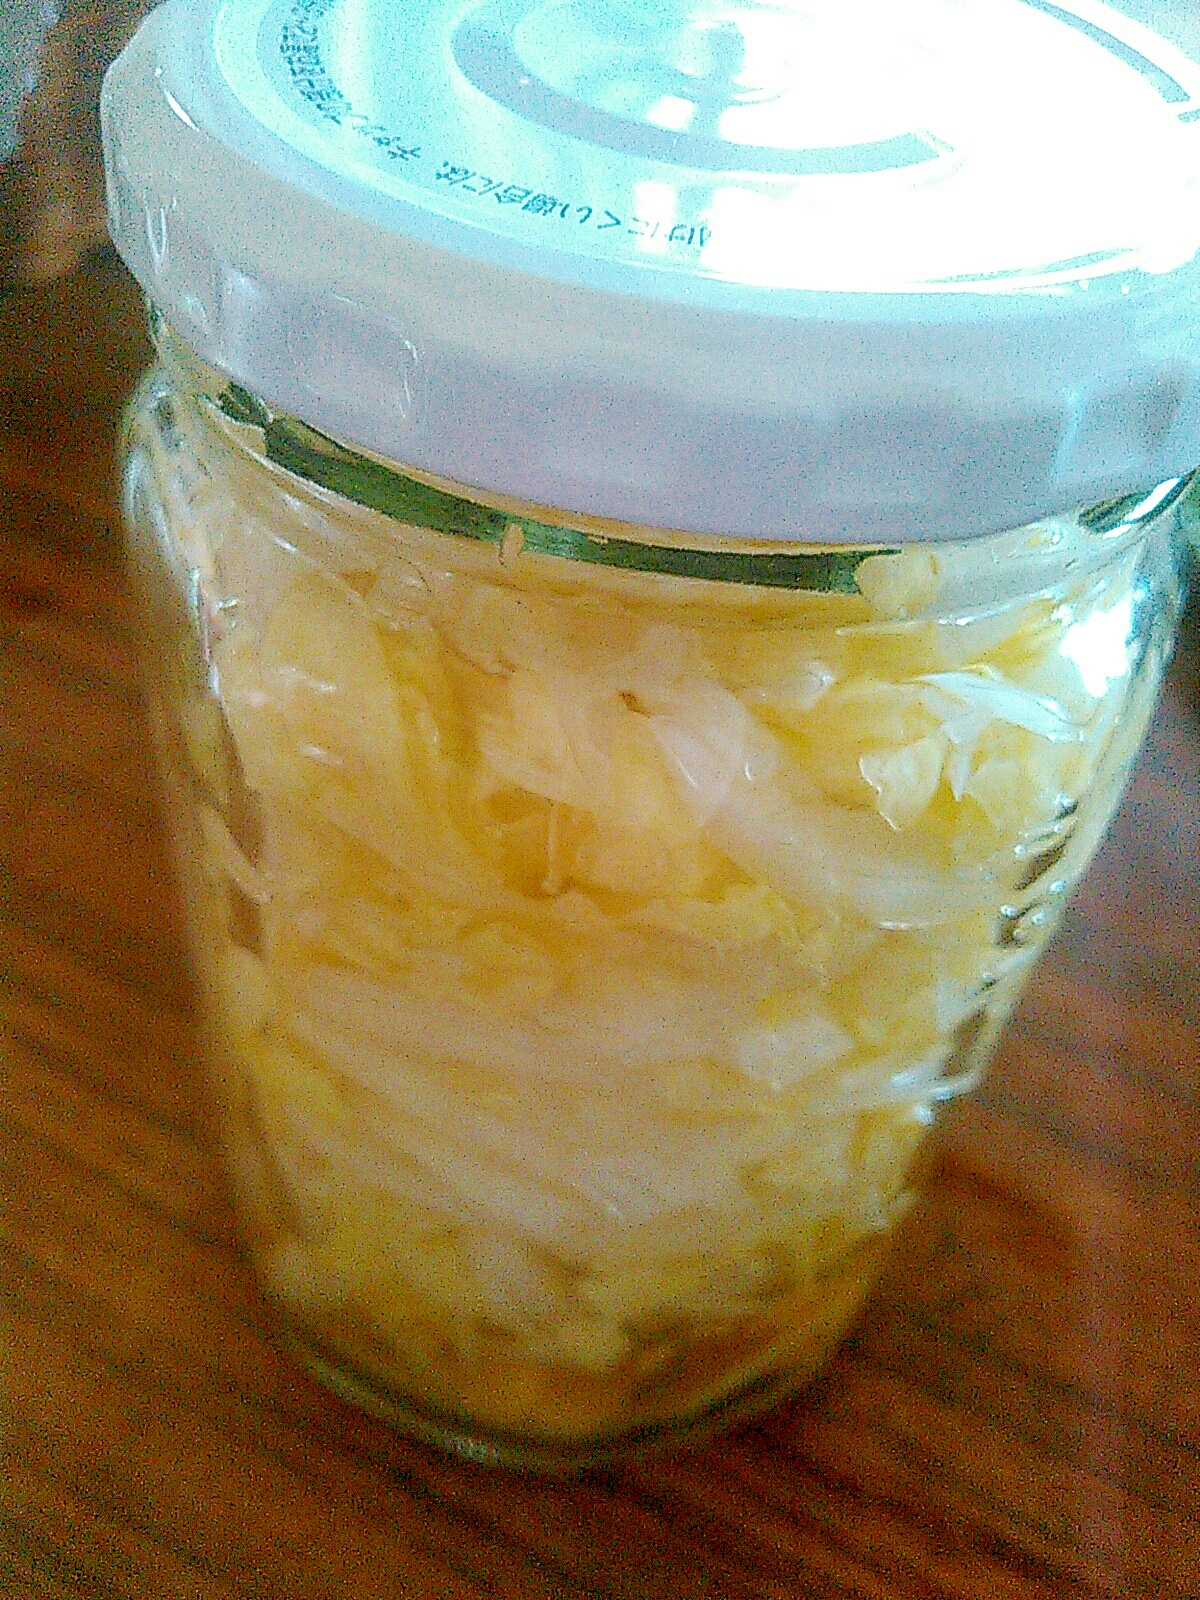 レモン風味☆サラダタマネギ&キャベツのピクルス